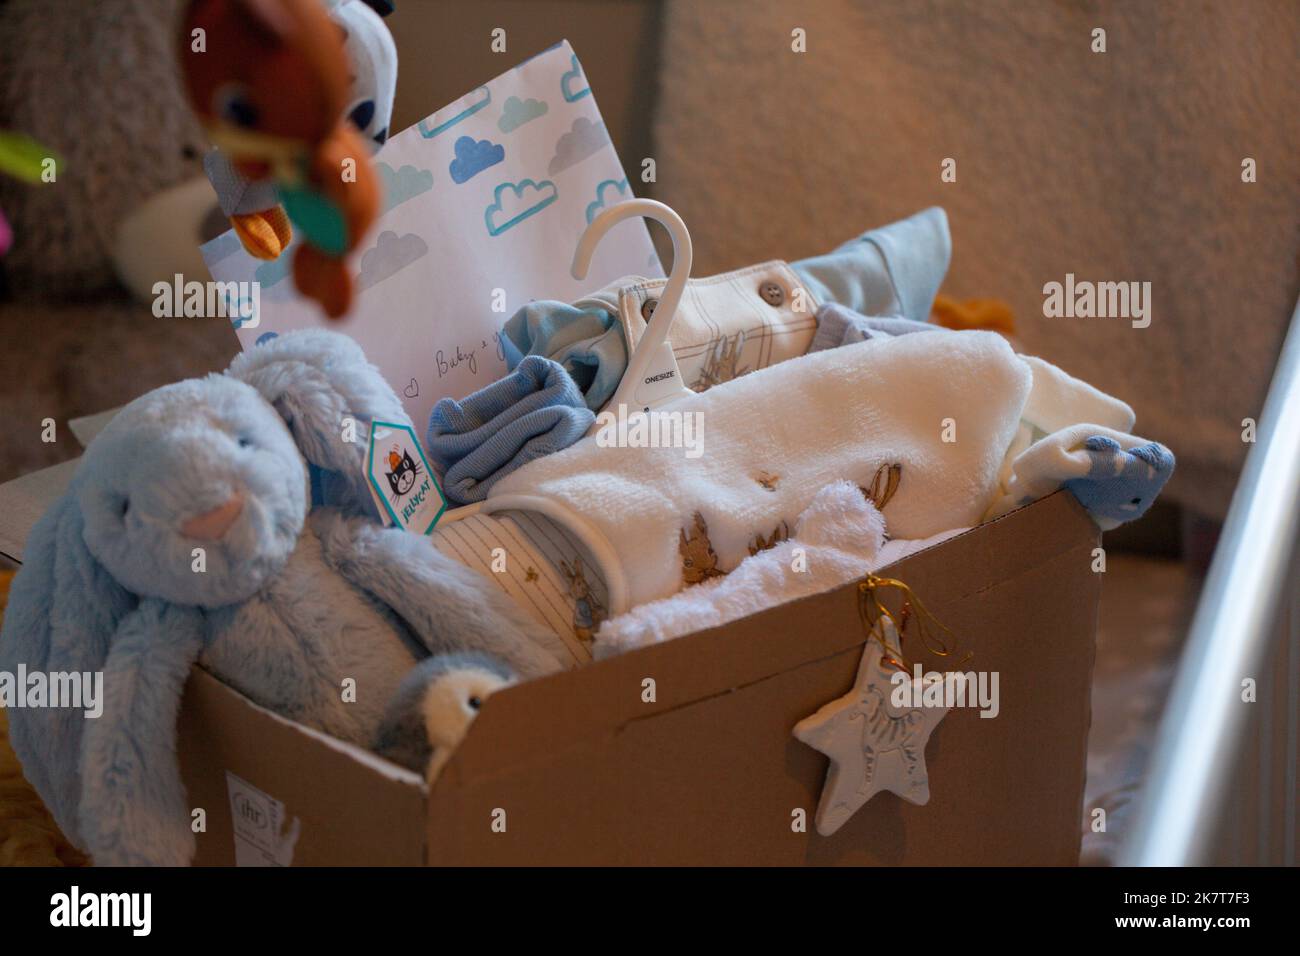 Babygeschenkkonzept und verpacktes Zubehör für neugeborene Jungen. Geschenkbox mit Decke, Kleidung, Socken, Schuhen und blauem Plüschhase. Babydusche. Stockfoto